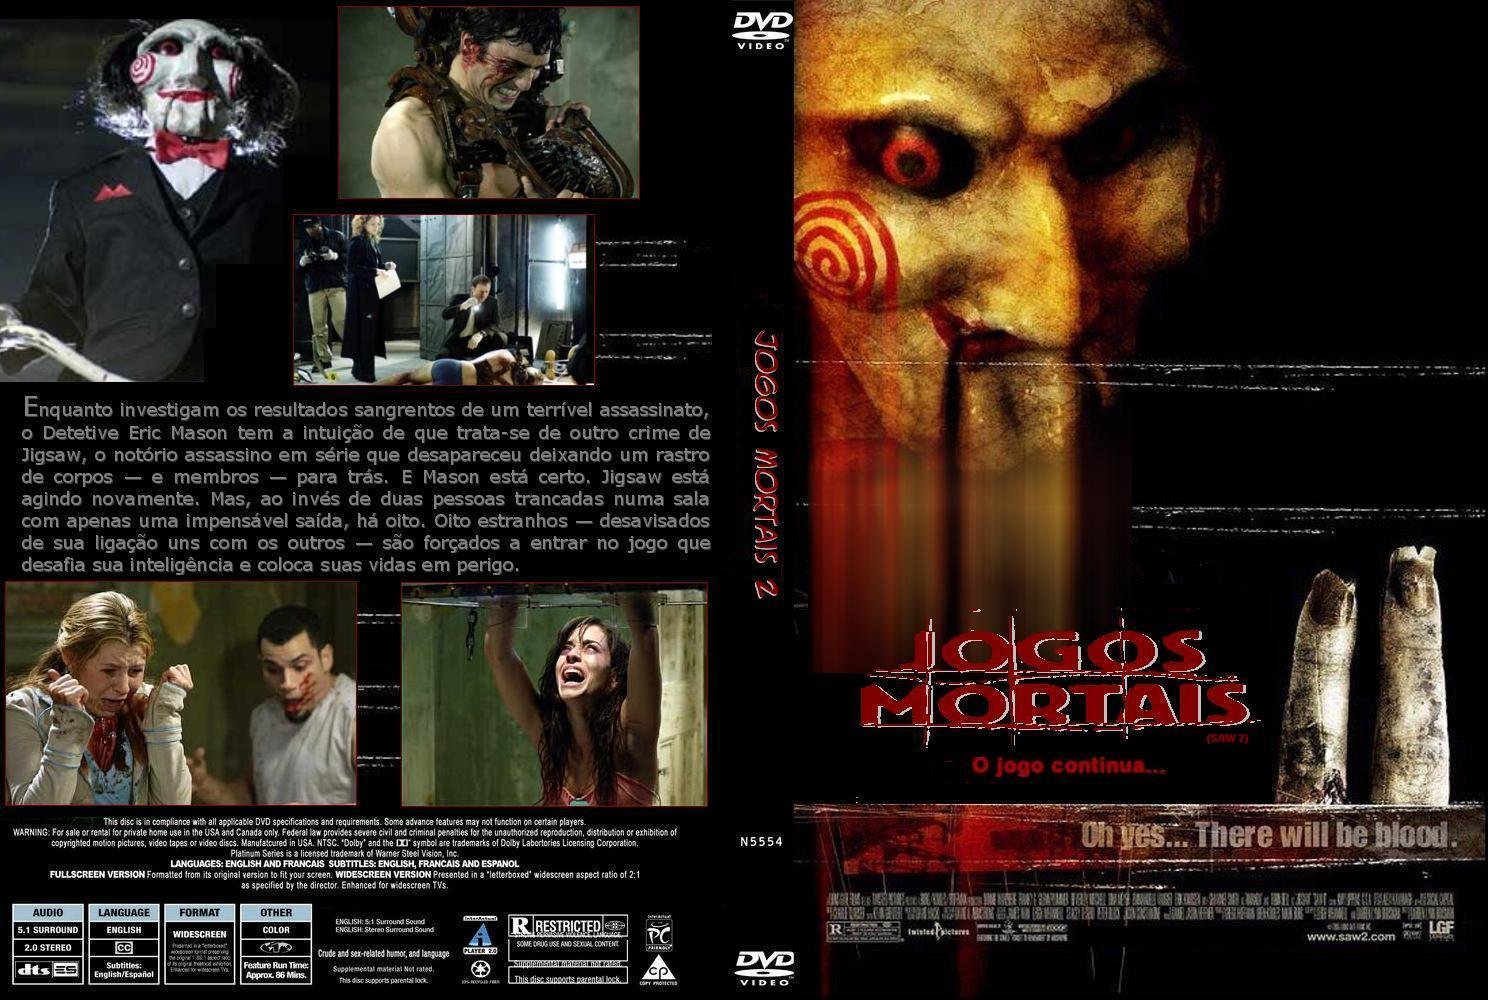 DVD - JOGOS MORTAIS 2 - O JOGO CONTINUA - Livraria Mania de Cultura